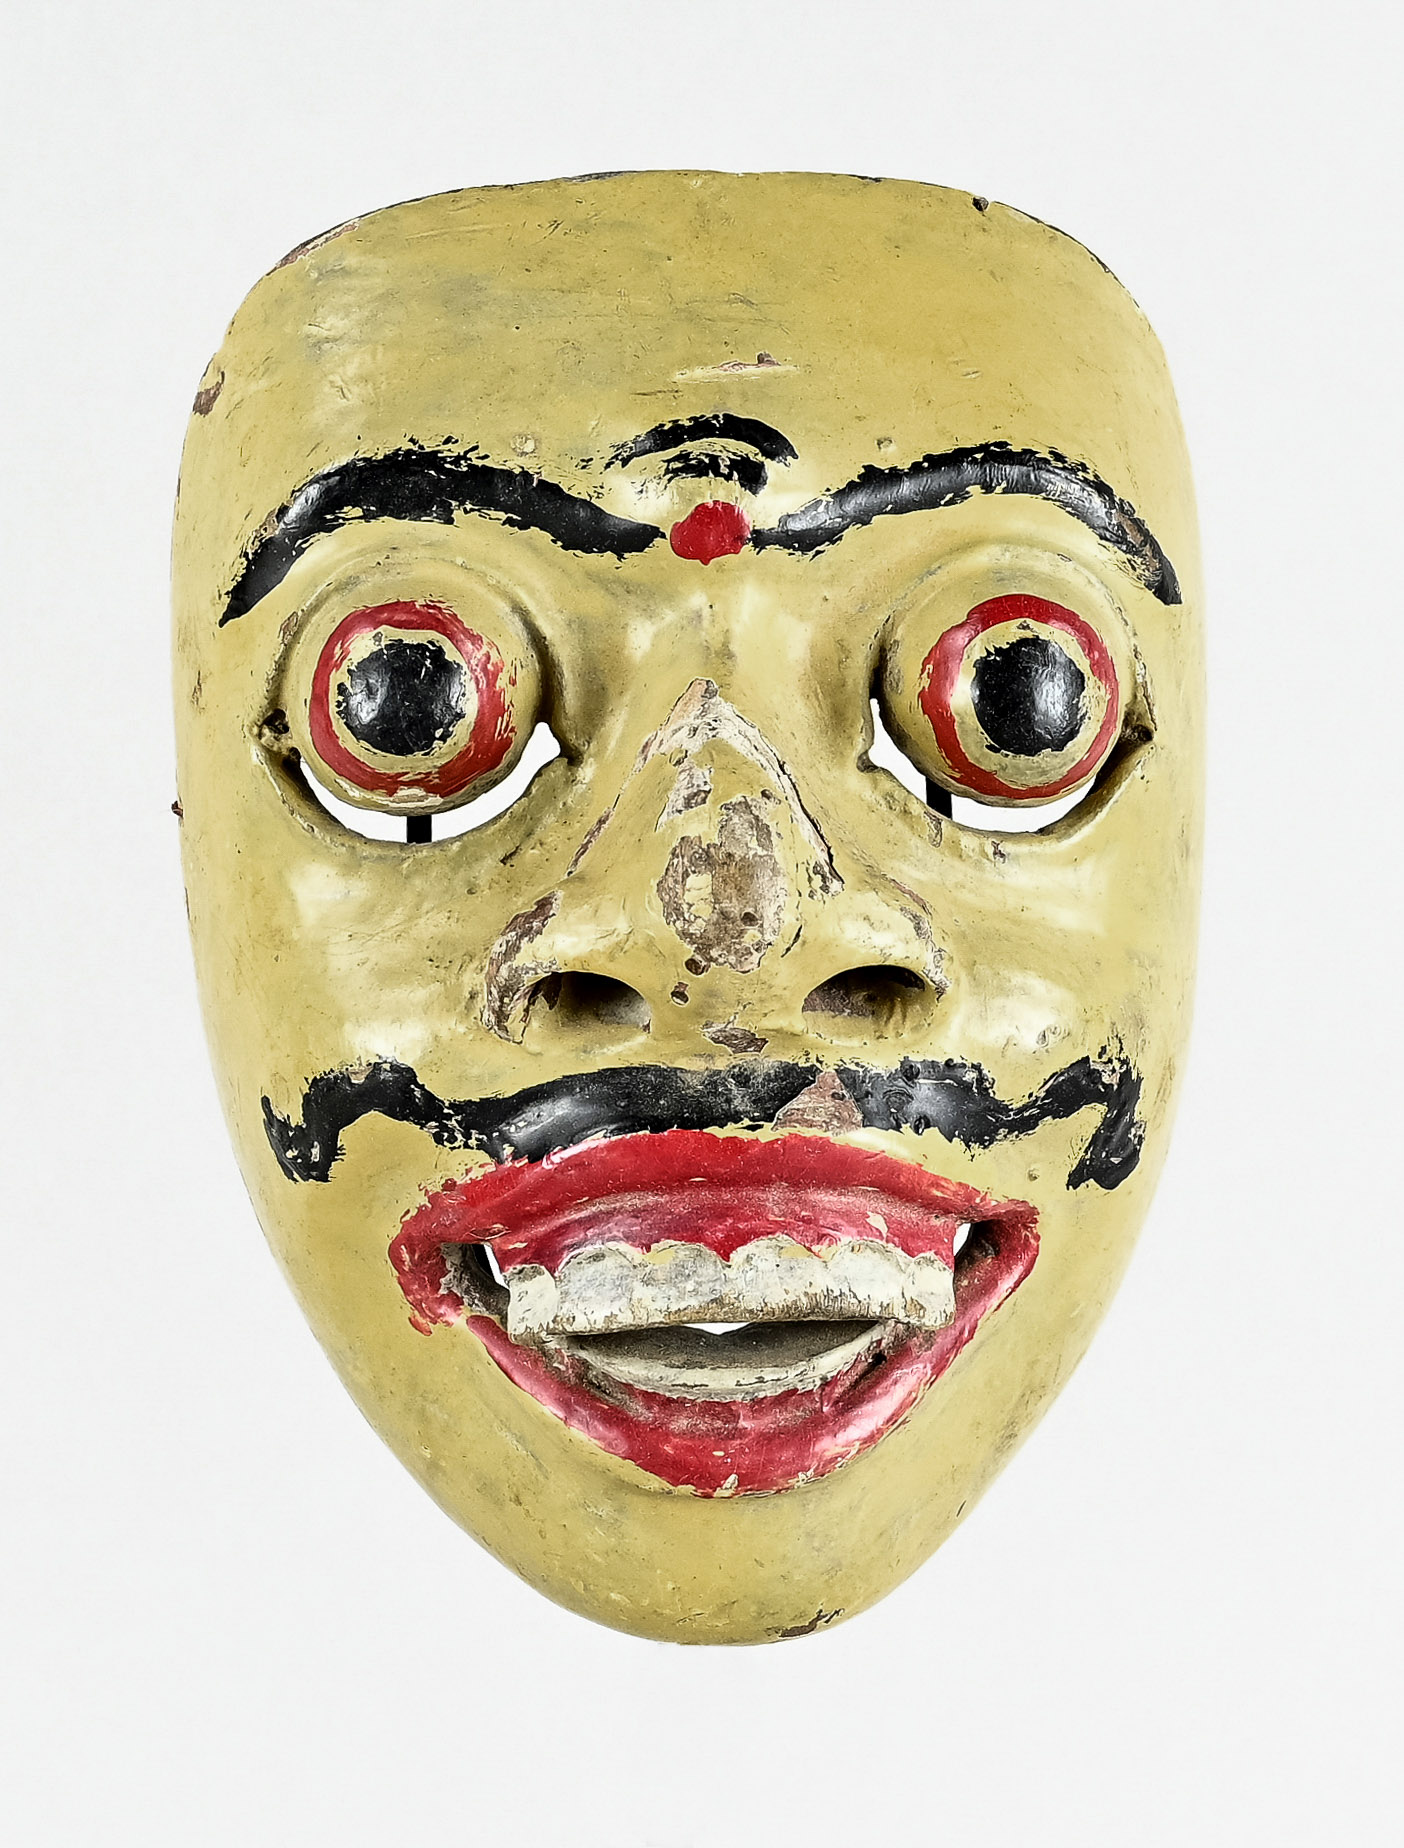 Maske, gelb gefasste Gesichtsmaske mit hervorgewölbten Kugelaugen, offener Mund mit hervorstehenden